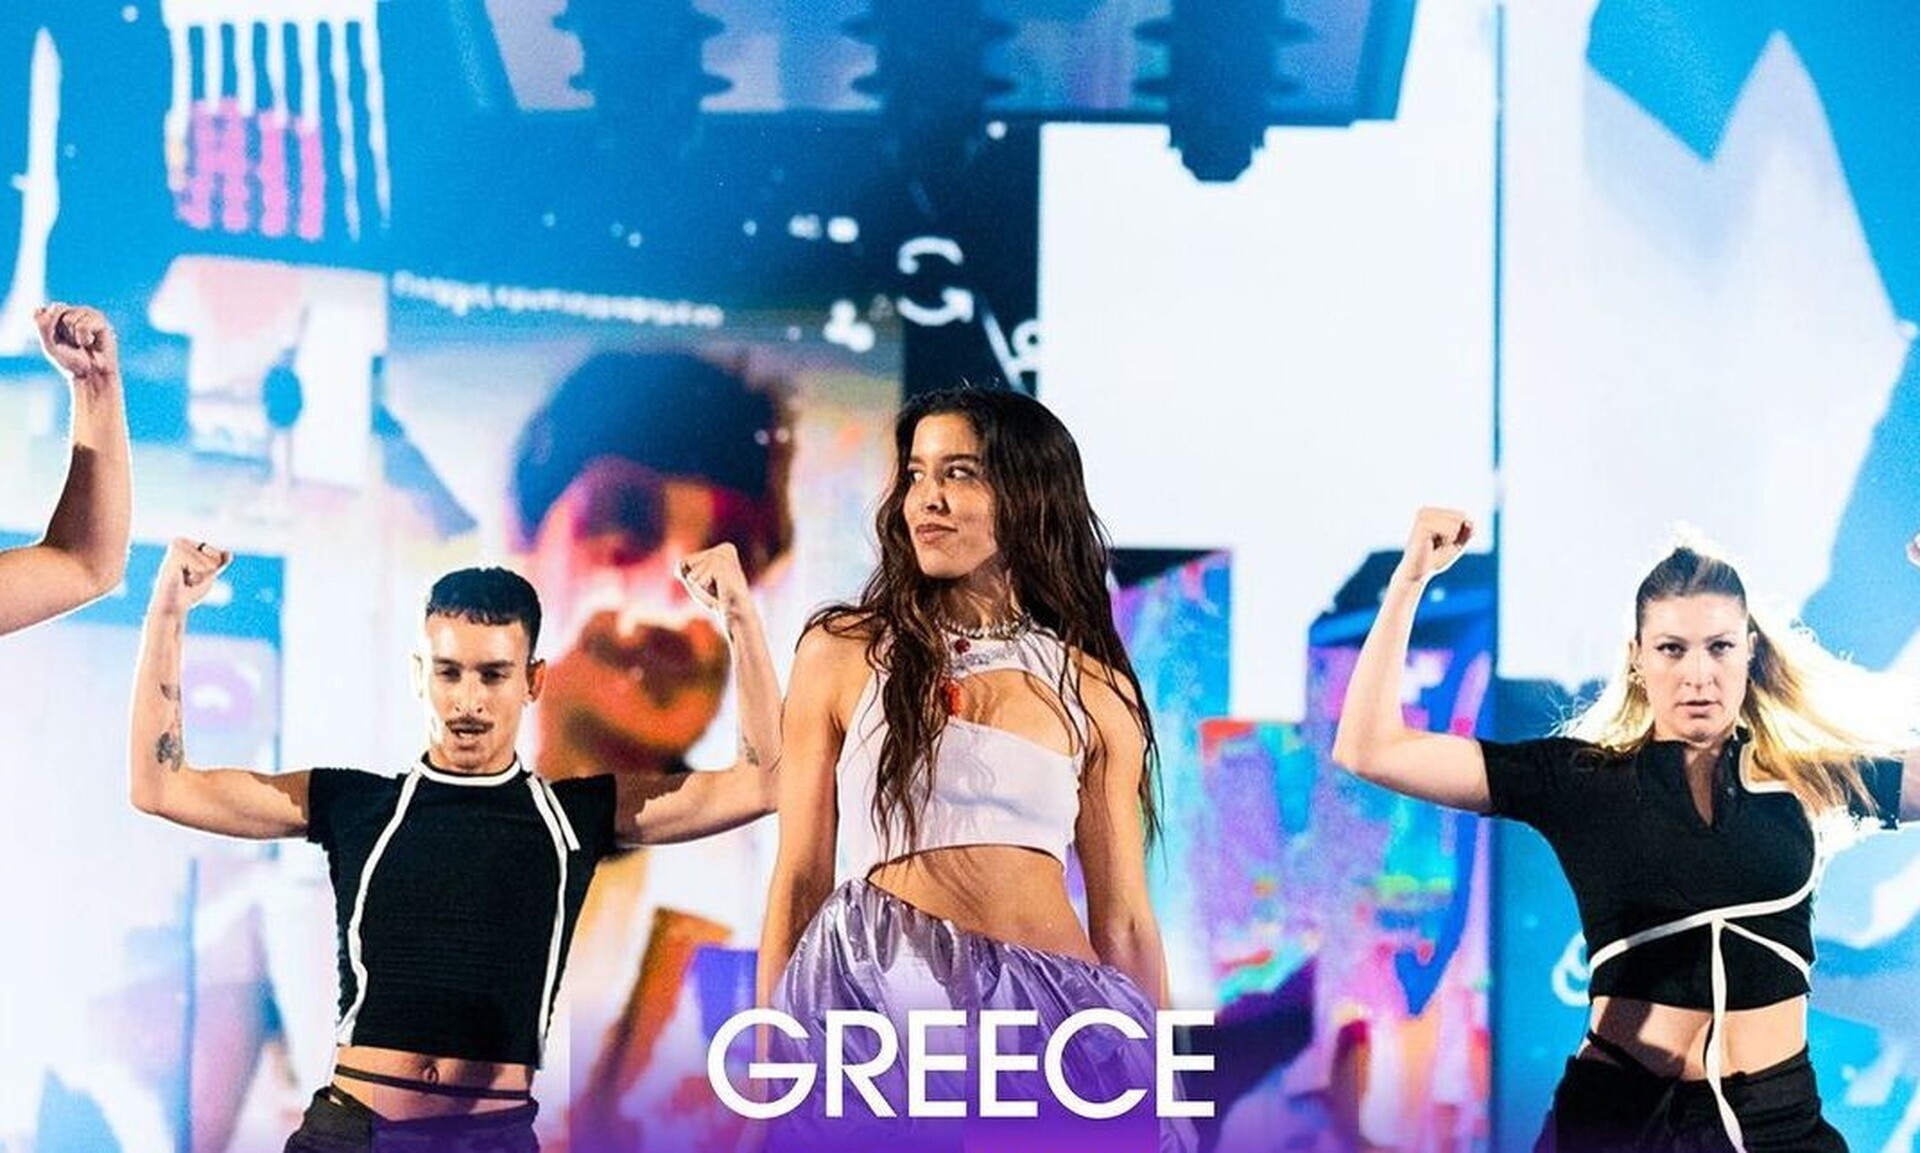 Μαρίνα Σάττι: «Το τραγούδι δεν αντιπροσωπεύει μόνο τη μουσική της Ελλάδας, αλλά και των Βαλκανίων»